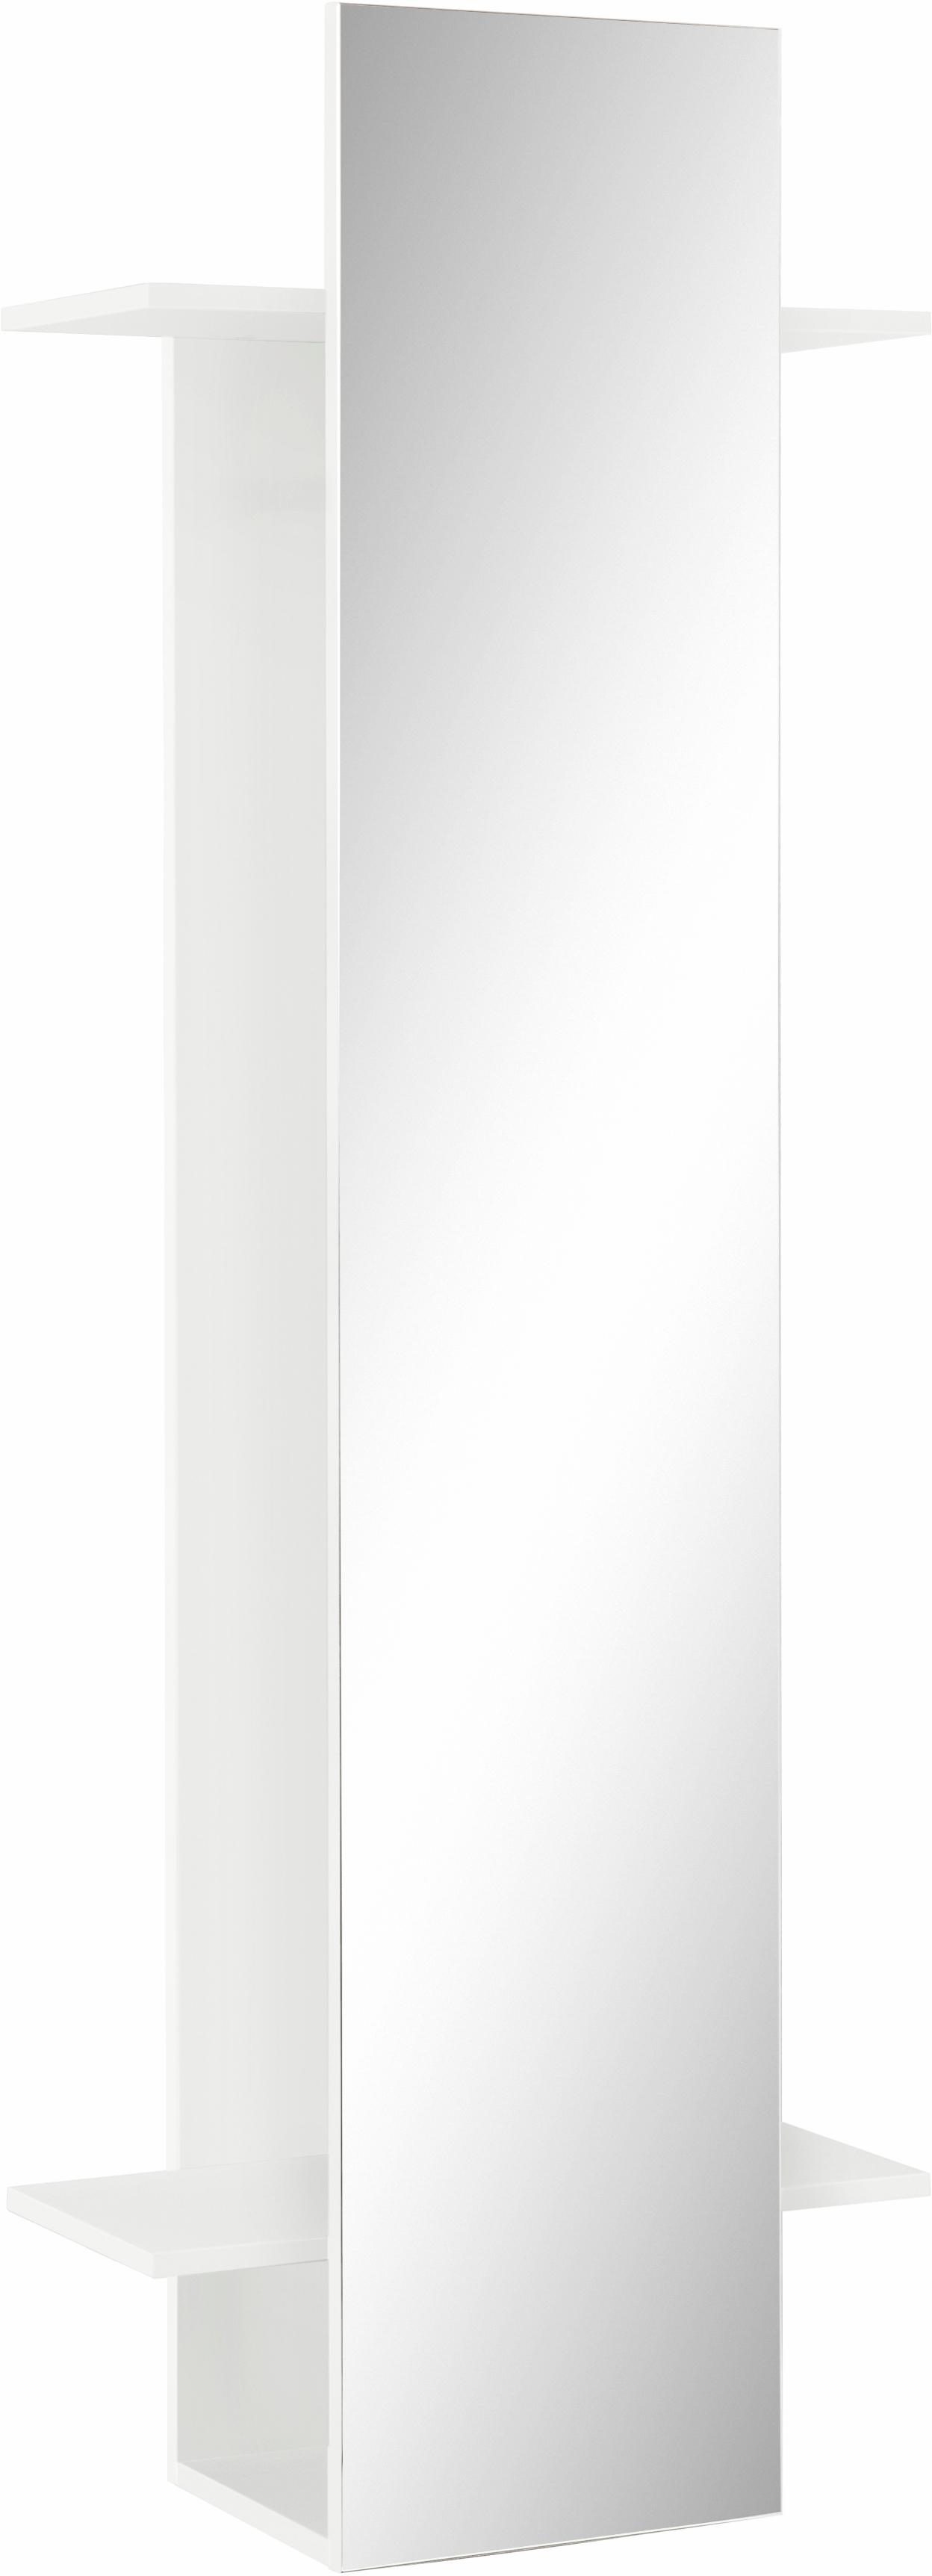 Schildmeyer Garderobenpaneel, mit Spiegel kaufen | OTTO